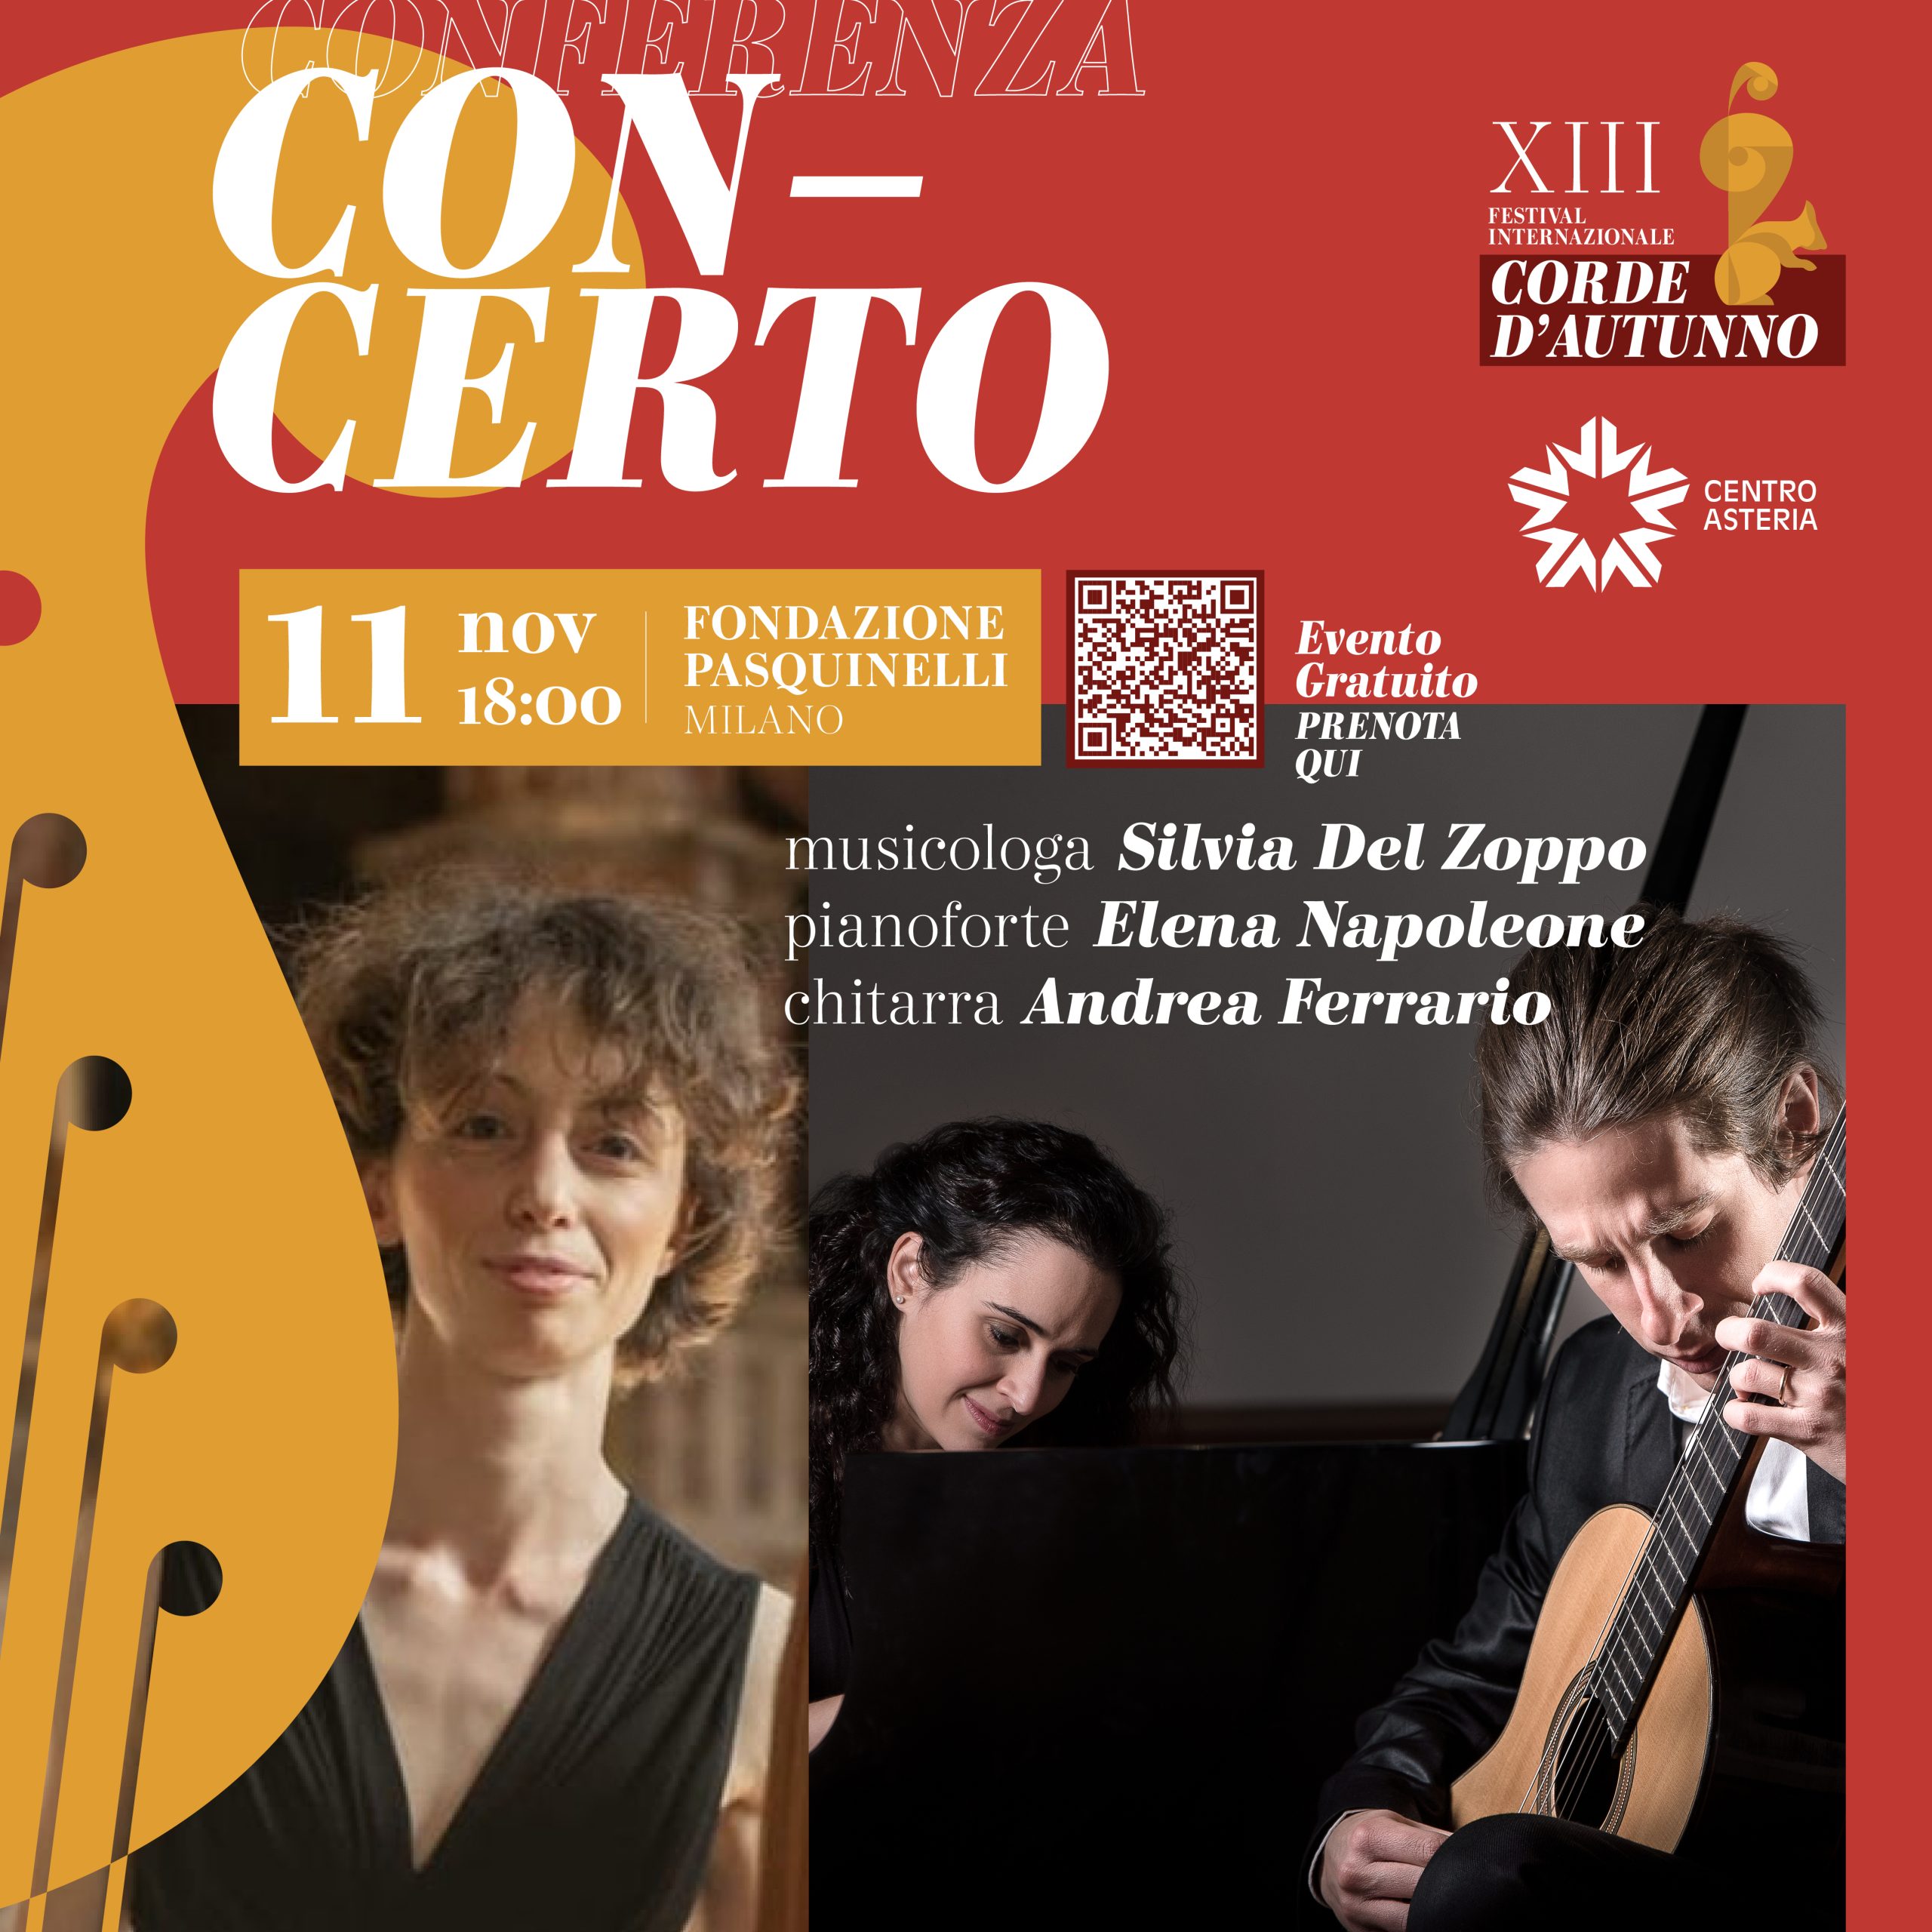 Concerto gratuito Festival corde d'autunno 2022